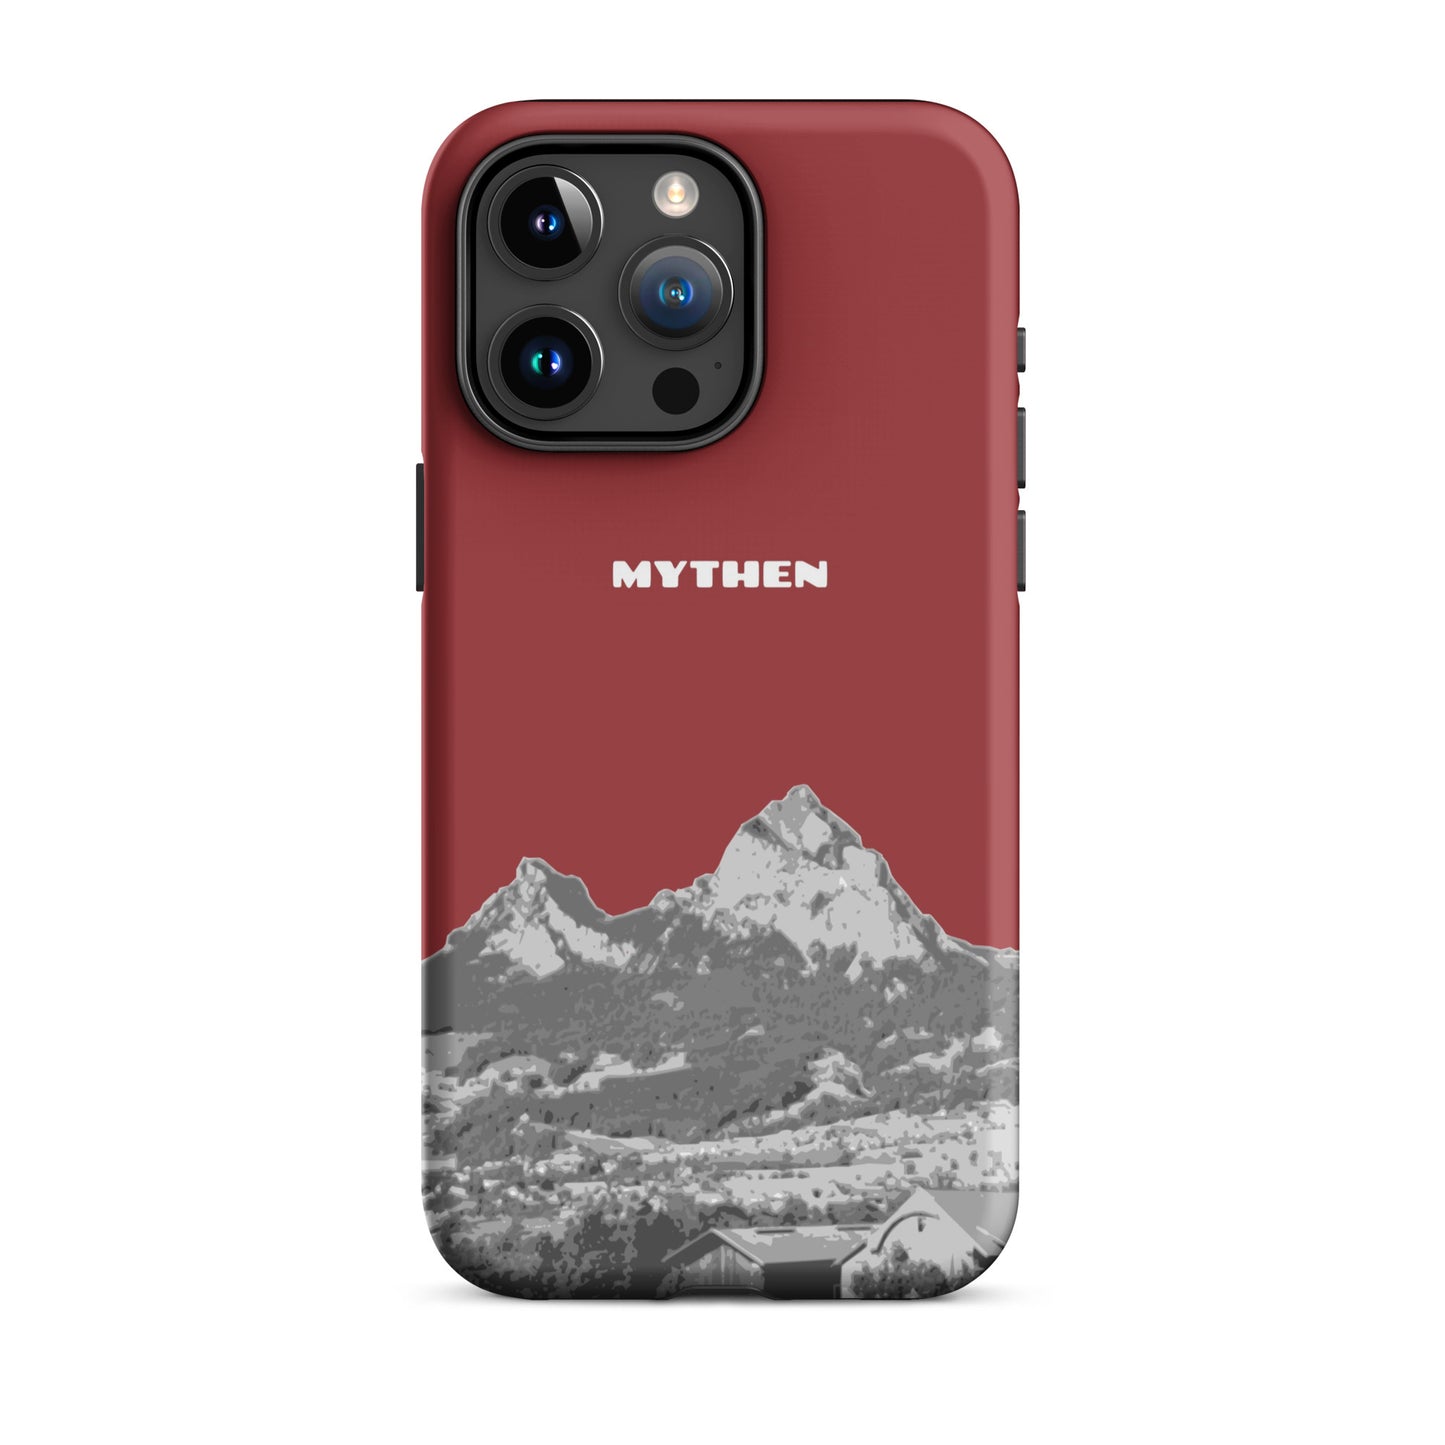 Hülle für das iPhone 15 Pro Max von Apple in der Farbe Rot, die den Grossen Mythen und den Kleinen Mythen bei Schwyz zeigt. 